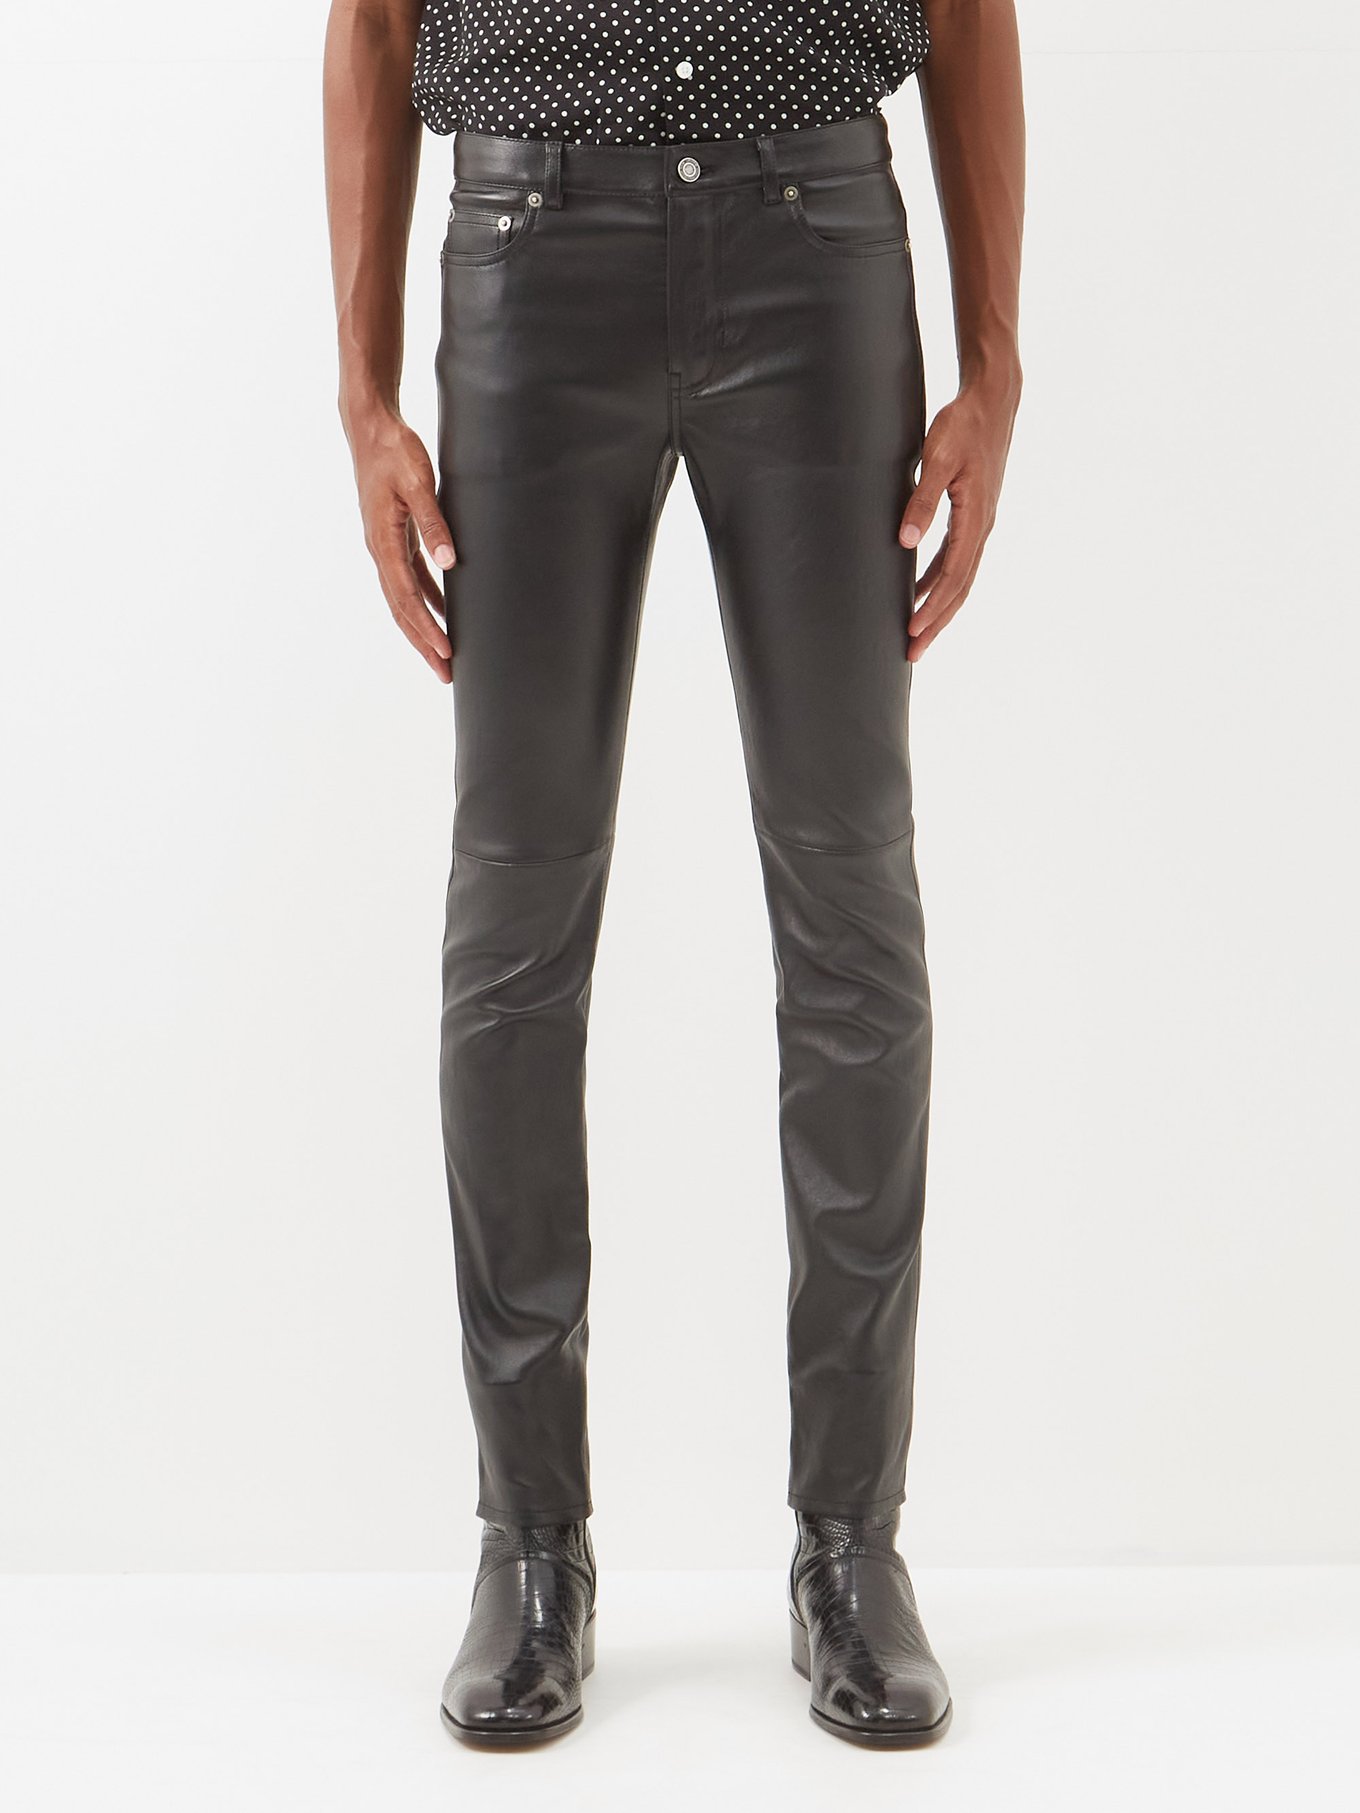 Black leather trousers | Saint Laurent MATCHESFASHION